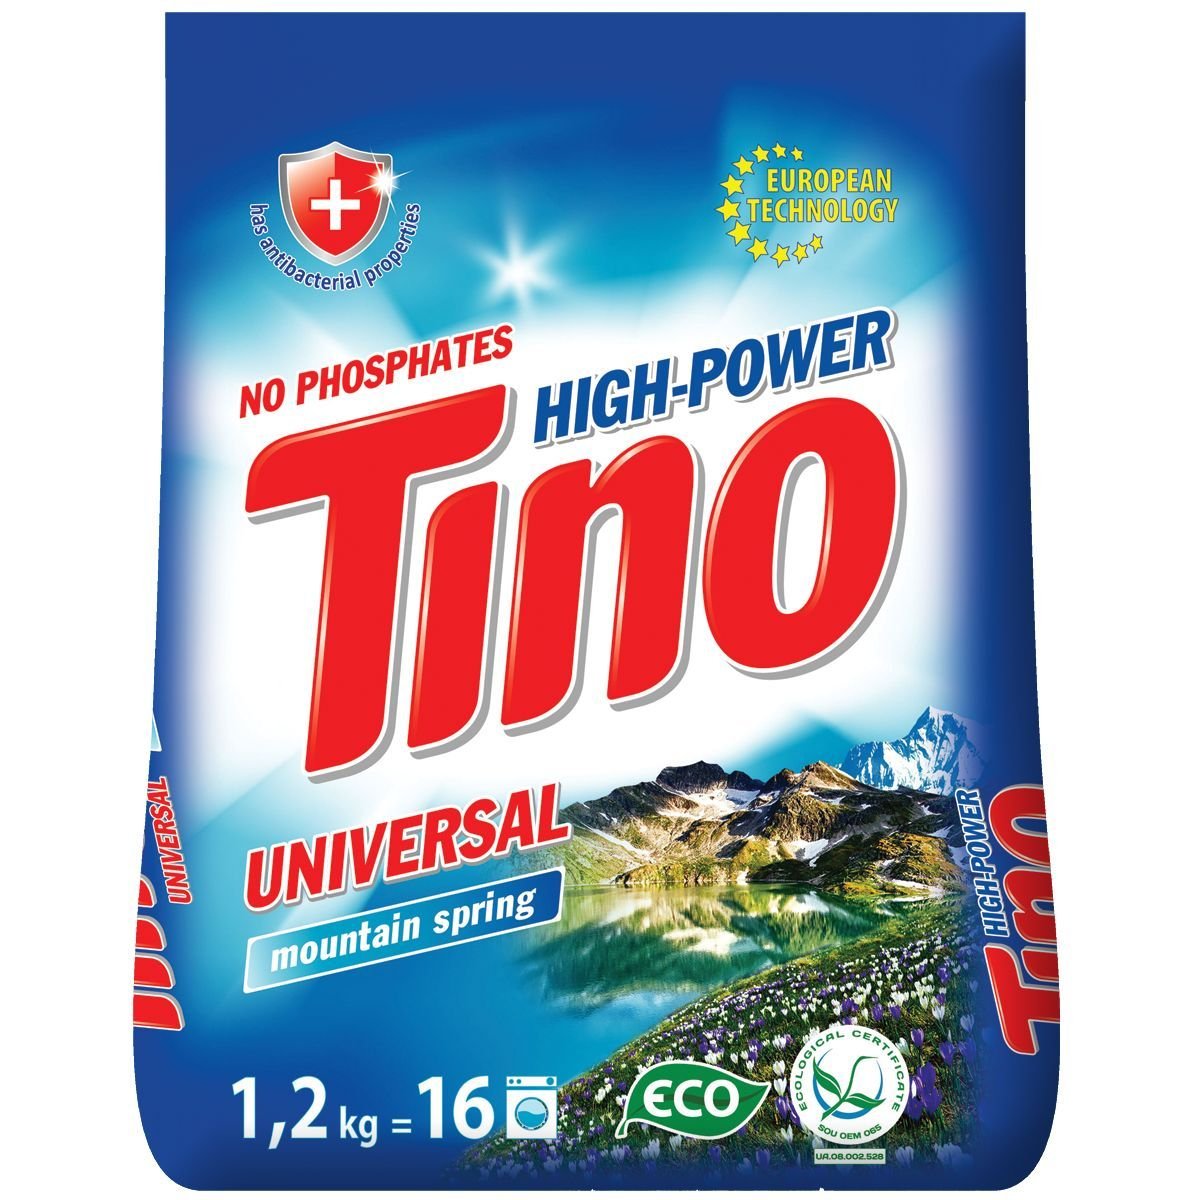 Порошок стиральный Tino High-Power Universal Mountain spring, 1,2 кг - фото 1